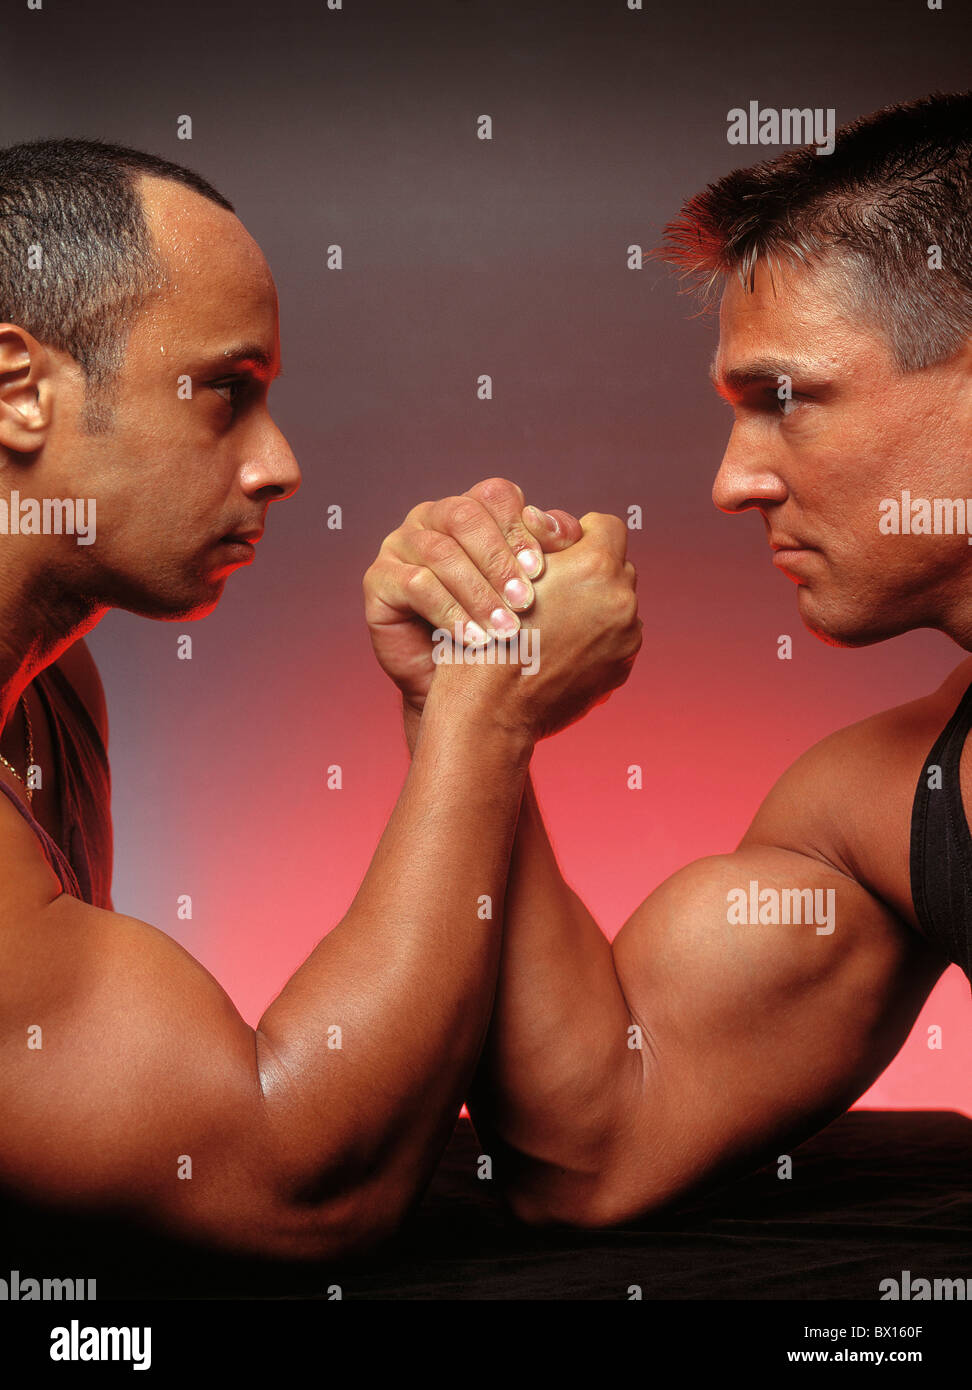 Braccio di avversari wrestling competizione atletica duello fiere forze modello rilasciato muscoli profilo gli avversari Foto Stock